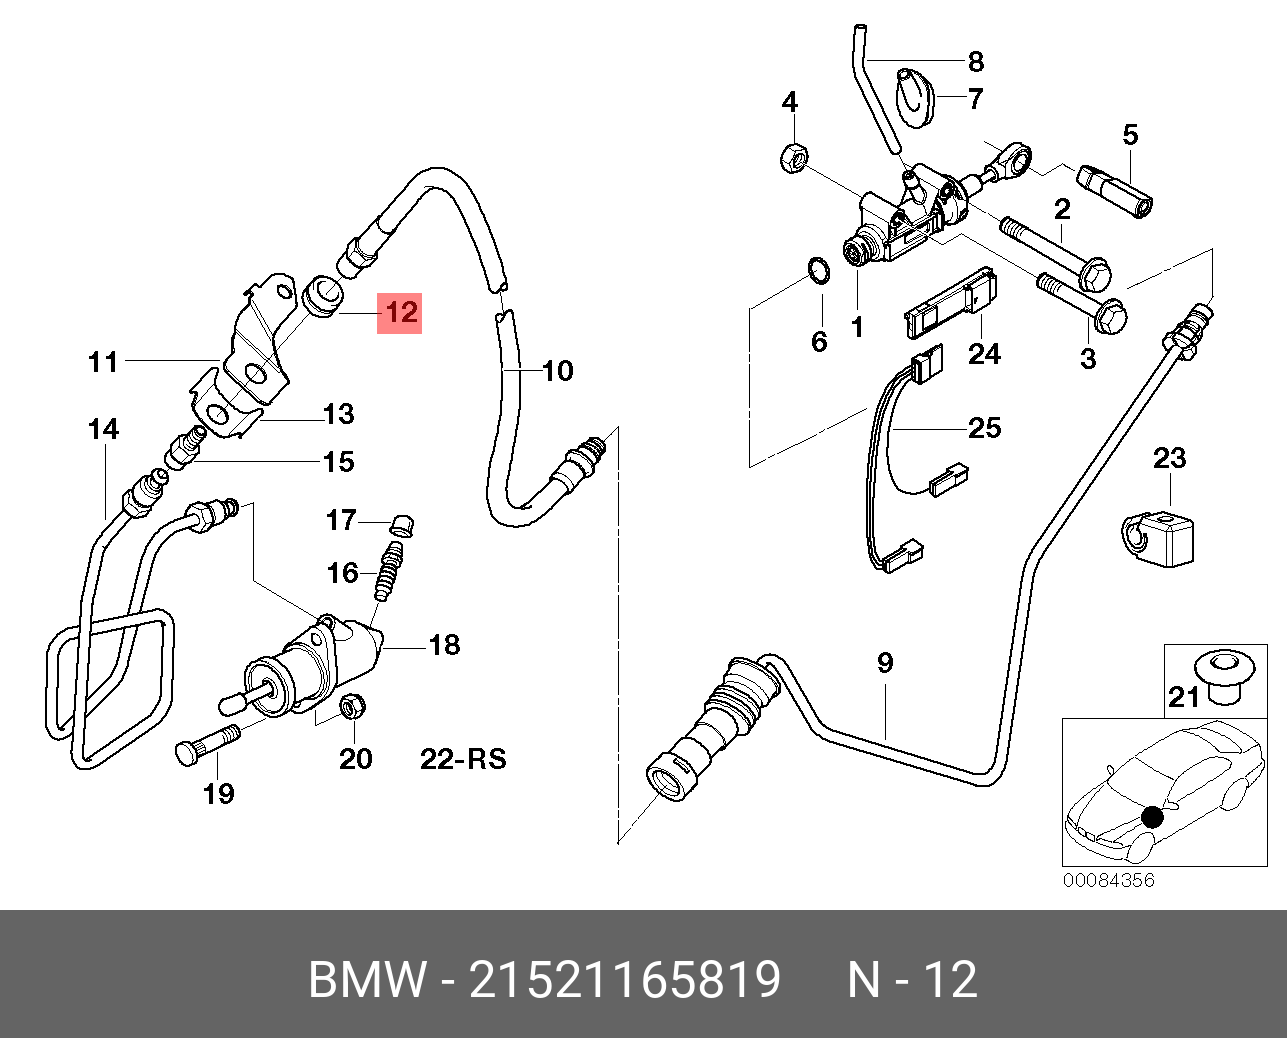 Трубка сцепления BMW e46. Шланг сцепления БМВ е46. Трубка сцепления БМВ е39. Трубка сцепления БМВ е36.